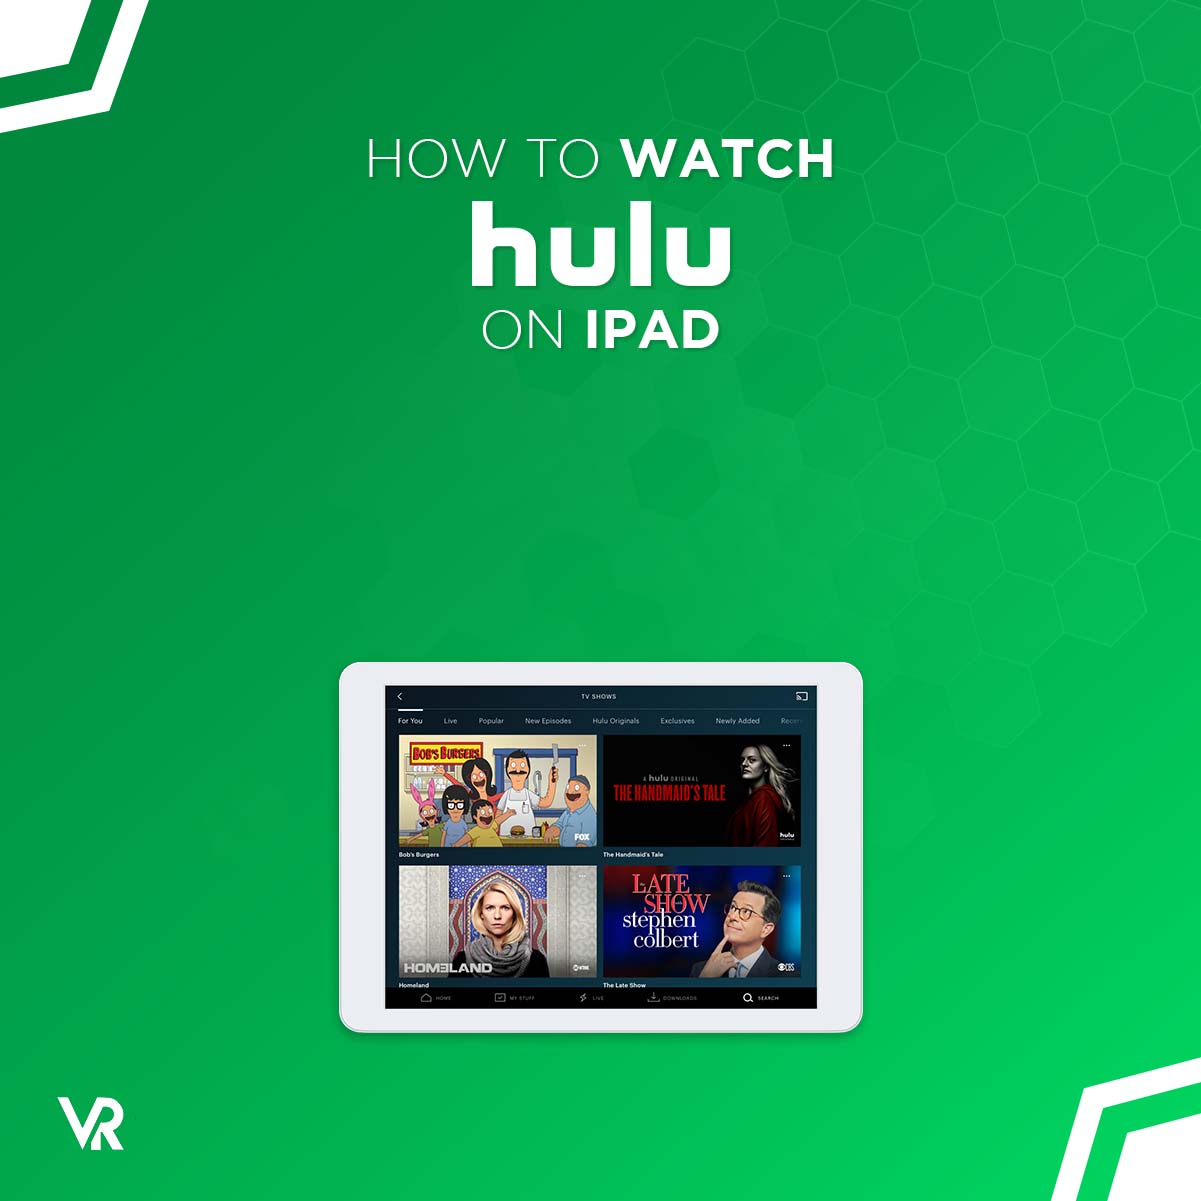 Cum îl fac pe Hulu să lucreze pe iPad -ul meu?